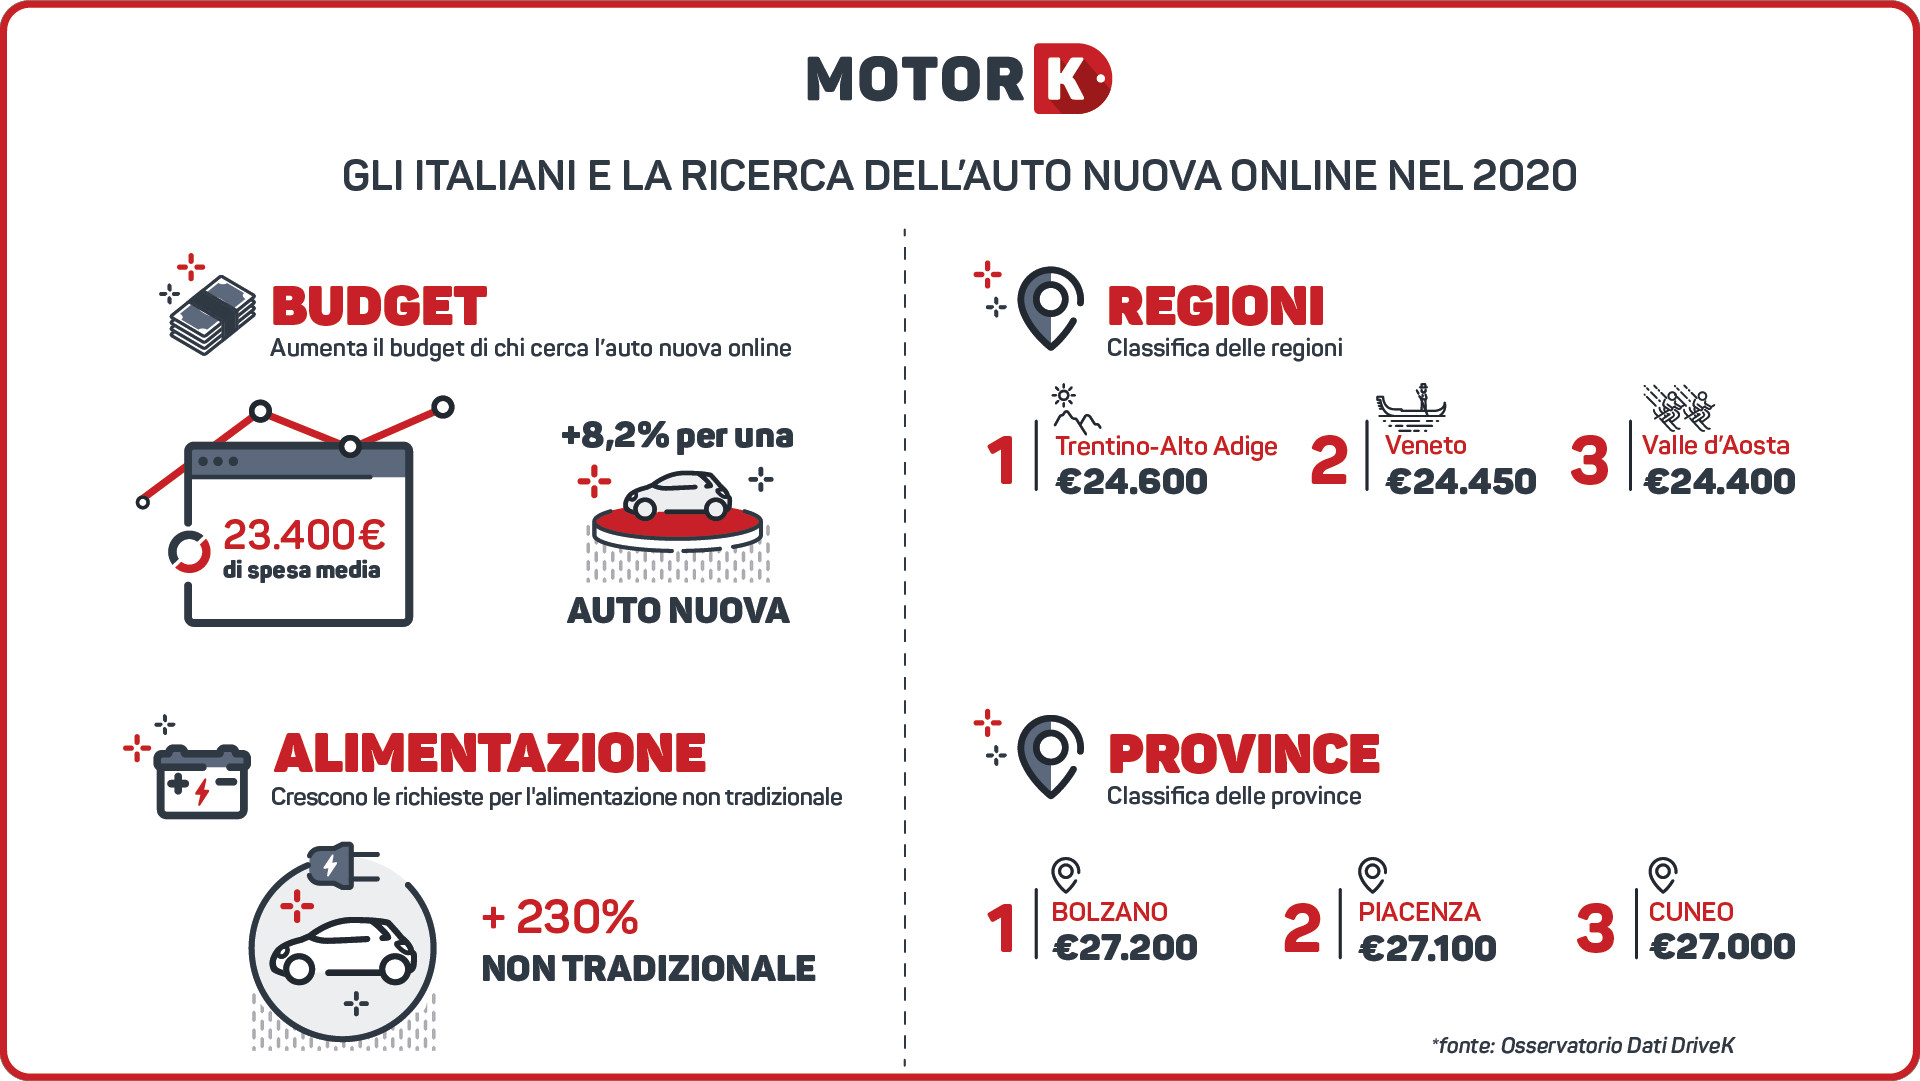 Quando spende, in media, un italiano per l’acquisto dell’auto nuova online?